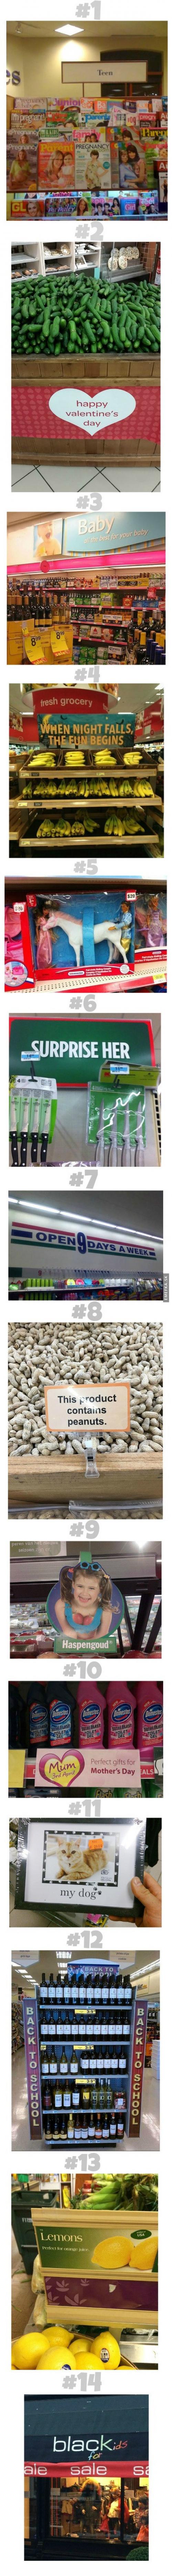  14 přehmatů v supermarketu 